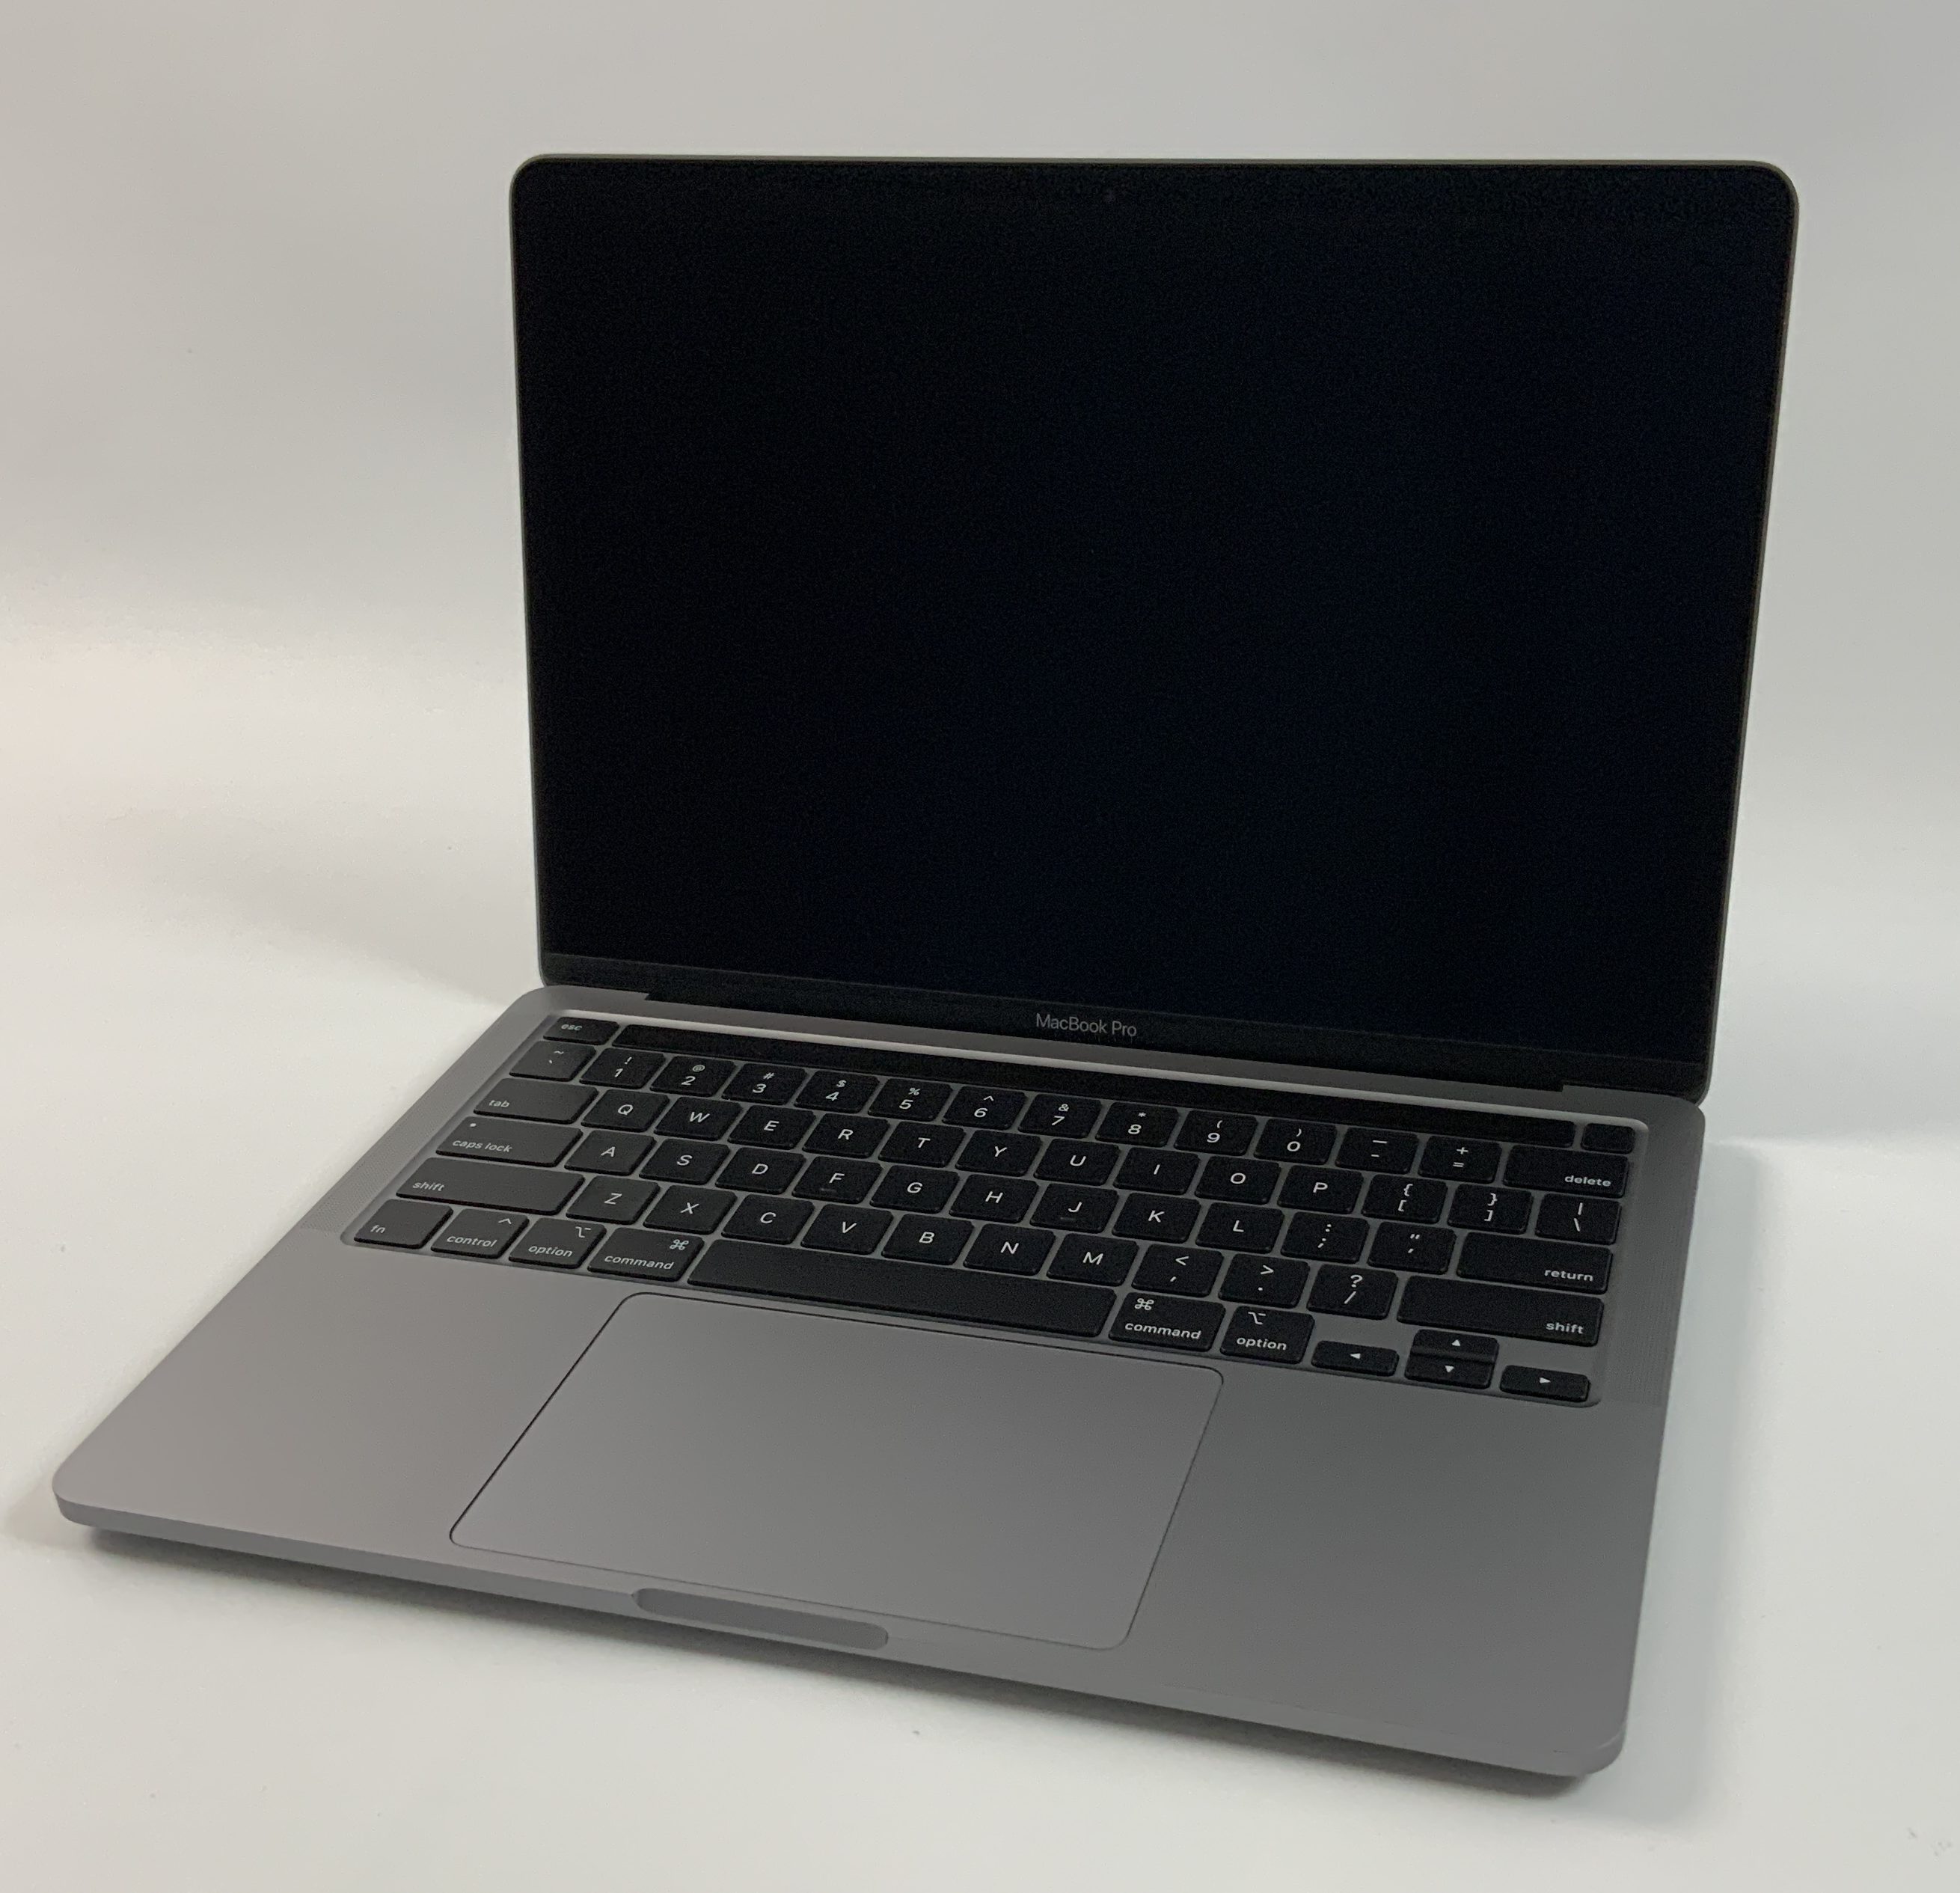 MacBook Pro 13" 4TBT Mid 2020 (Intel Quad-Core i5 2.0 GHz 16 GB RAM 512 GB SSD), Space Gray, Intel Quad-Core i5 2.0 GHz, 16 GB RAM, 512 GB SSD, bild 1